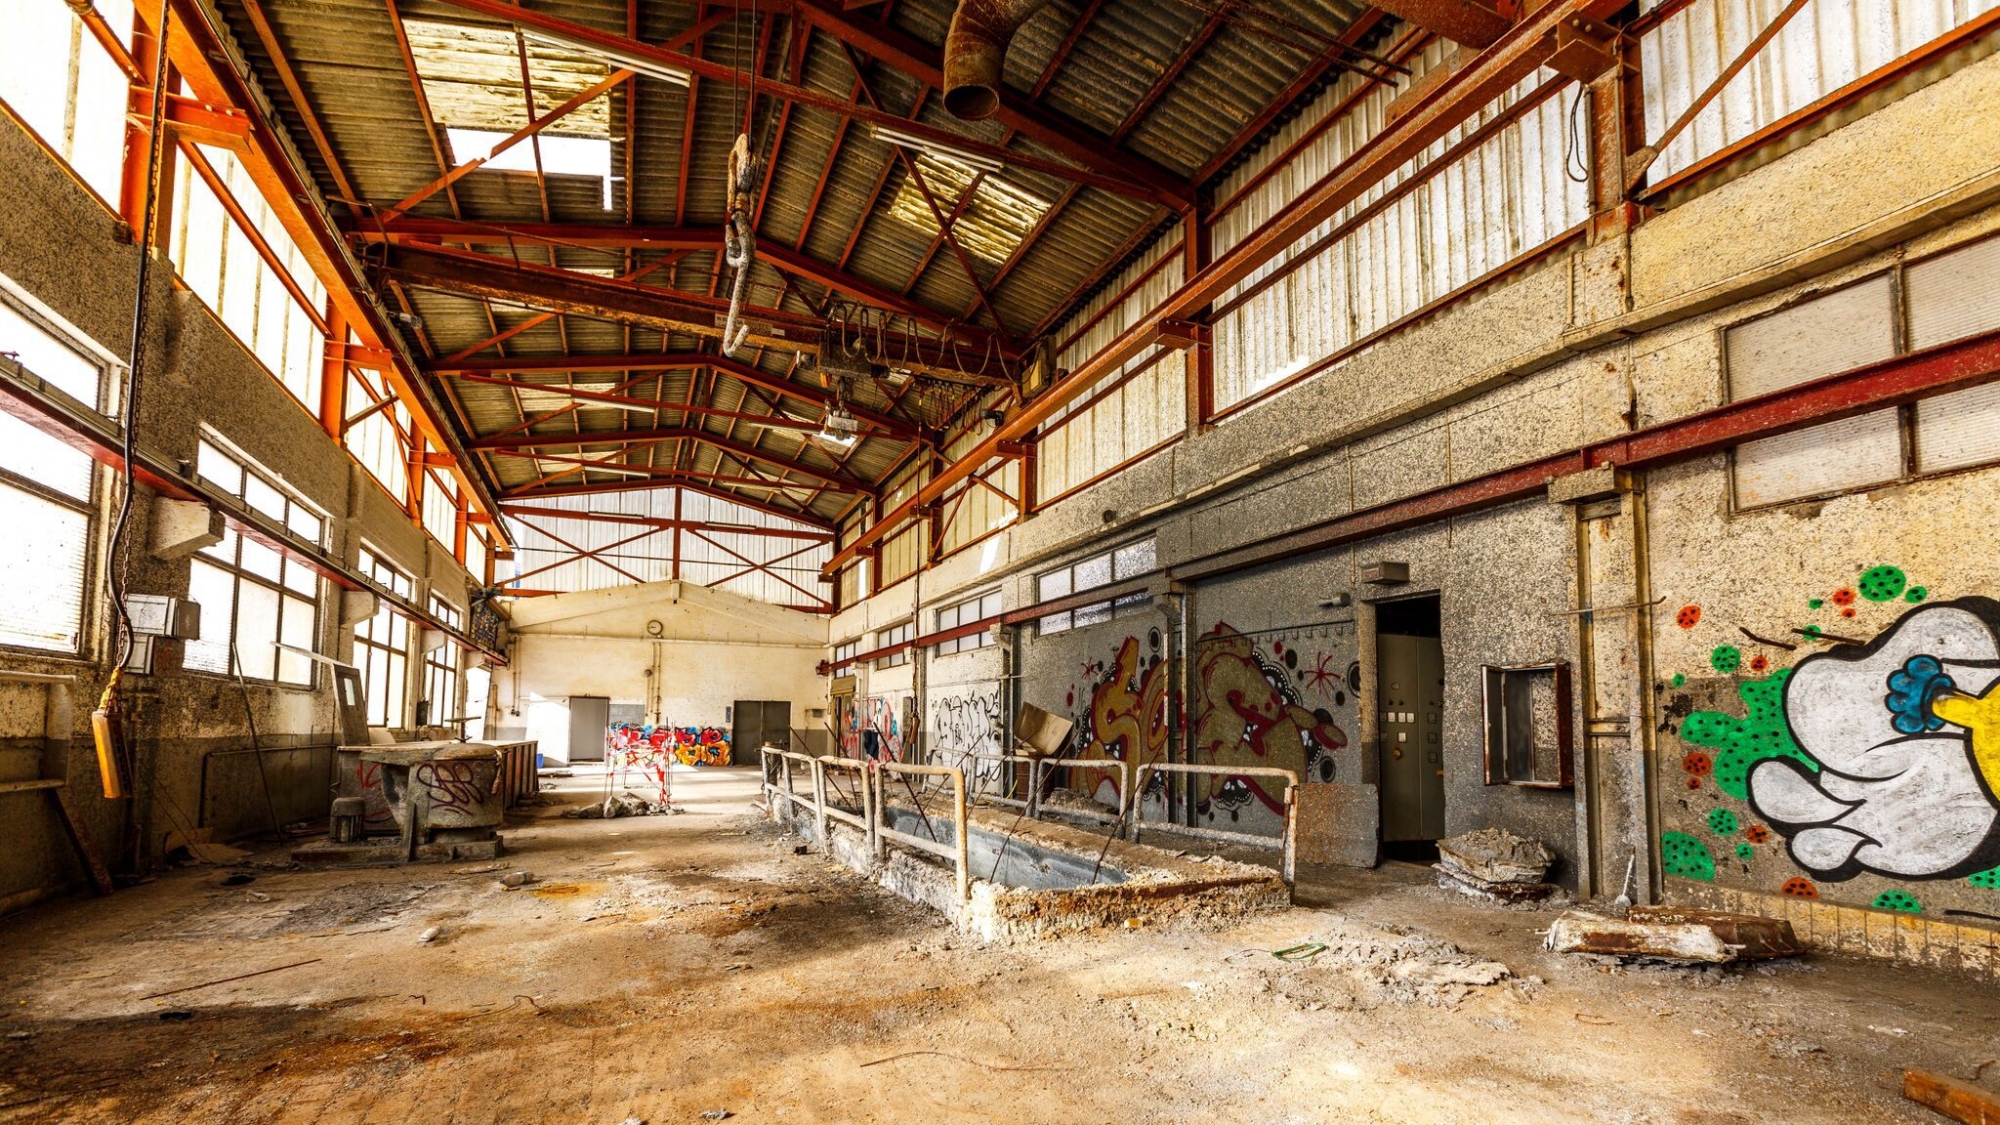 Il existe plusieurs lieux abandonnés en Valais. Halles industrielles, hôtels, usines hydroélectriques ou anciennes carrières attirent les fans d’urbex.